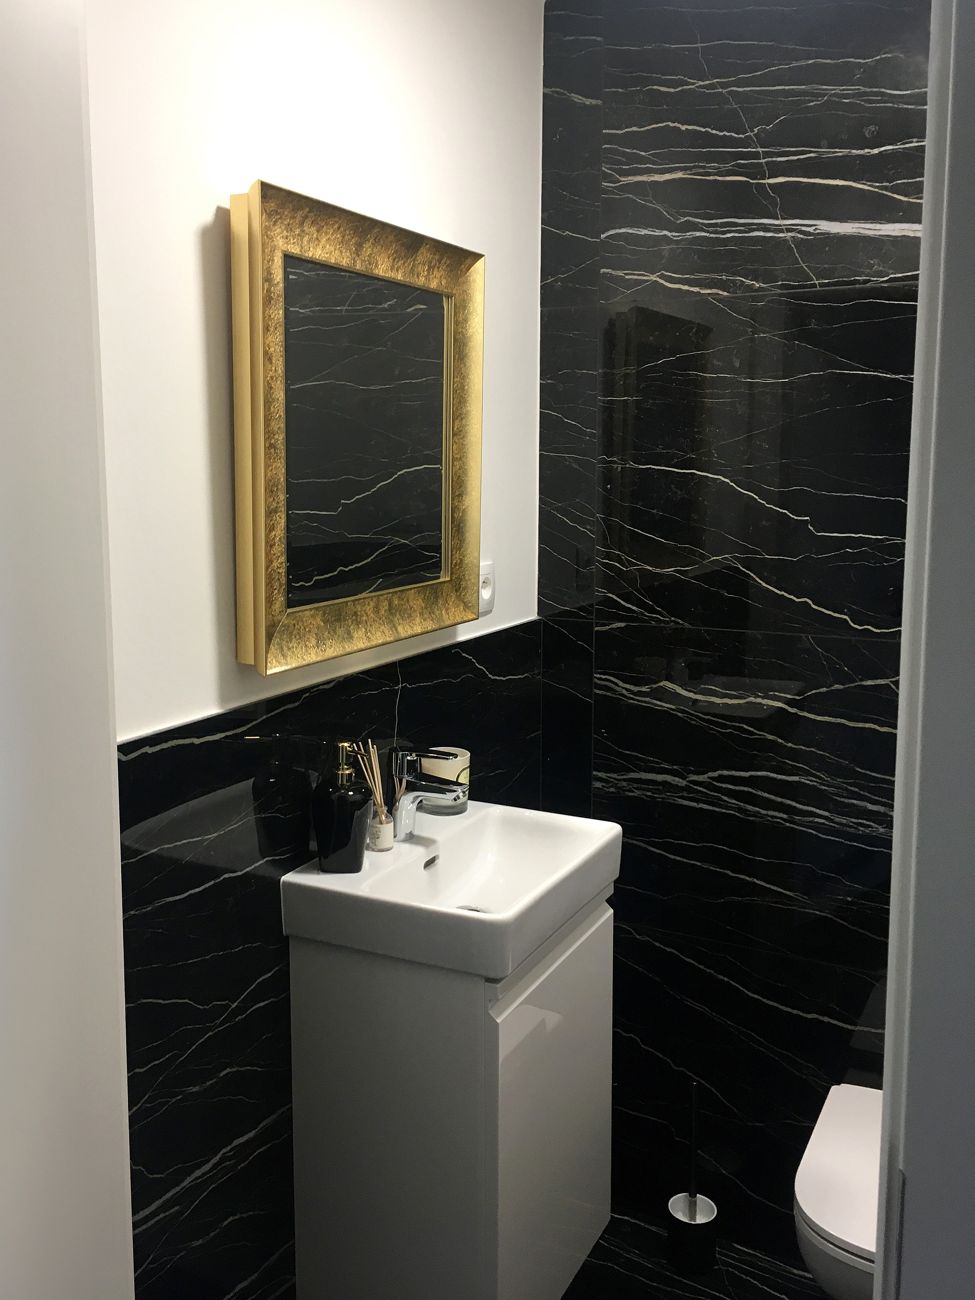 Koupelnové zrcadlo ve zlatém designovém rámu | © Ateliér Frameit